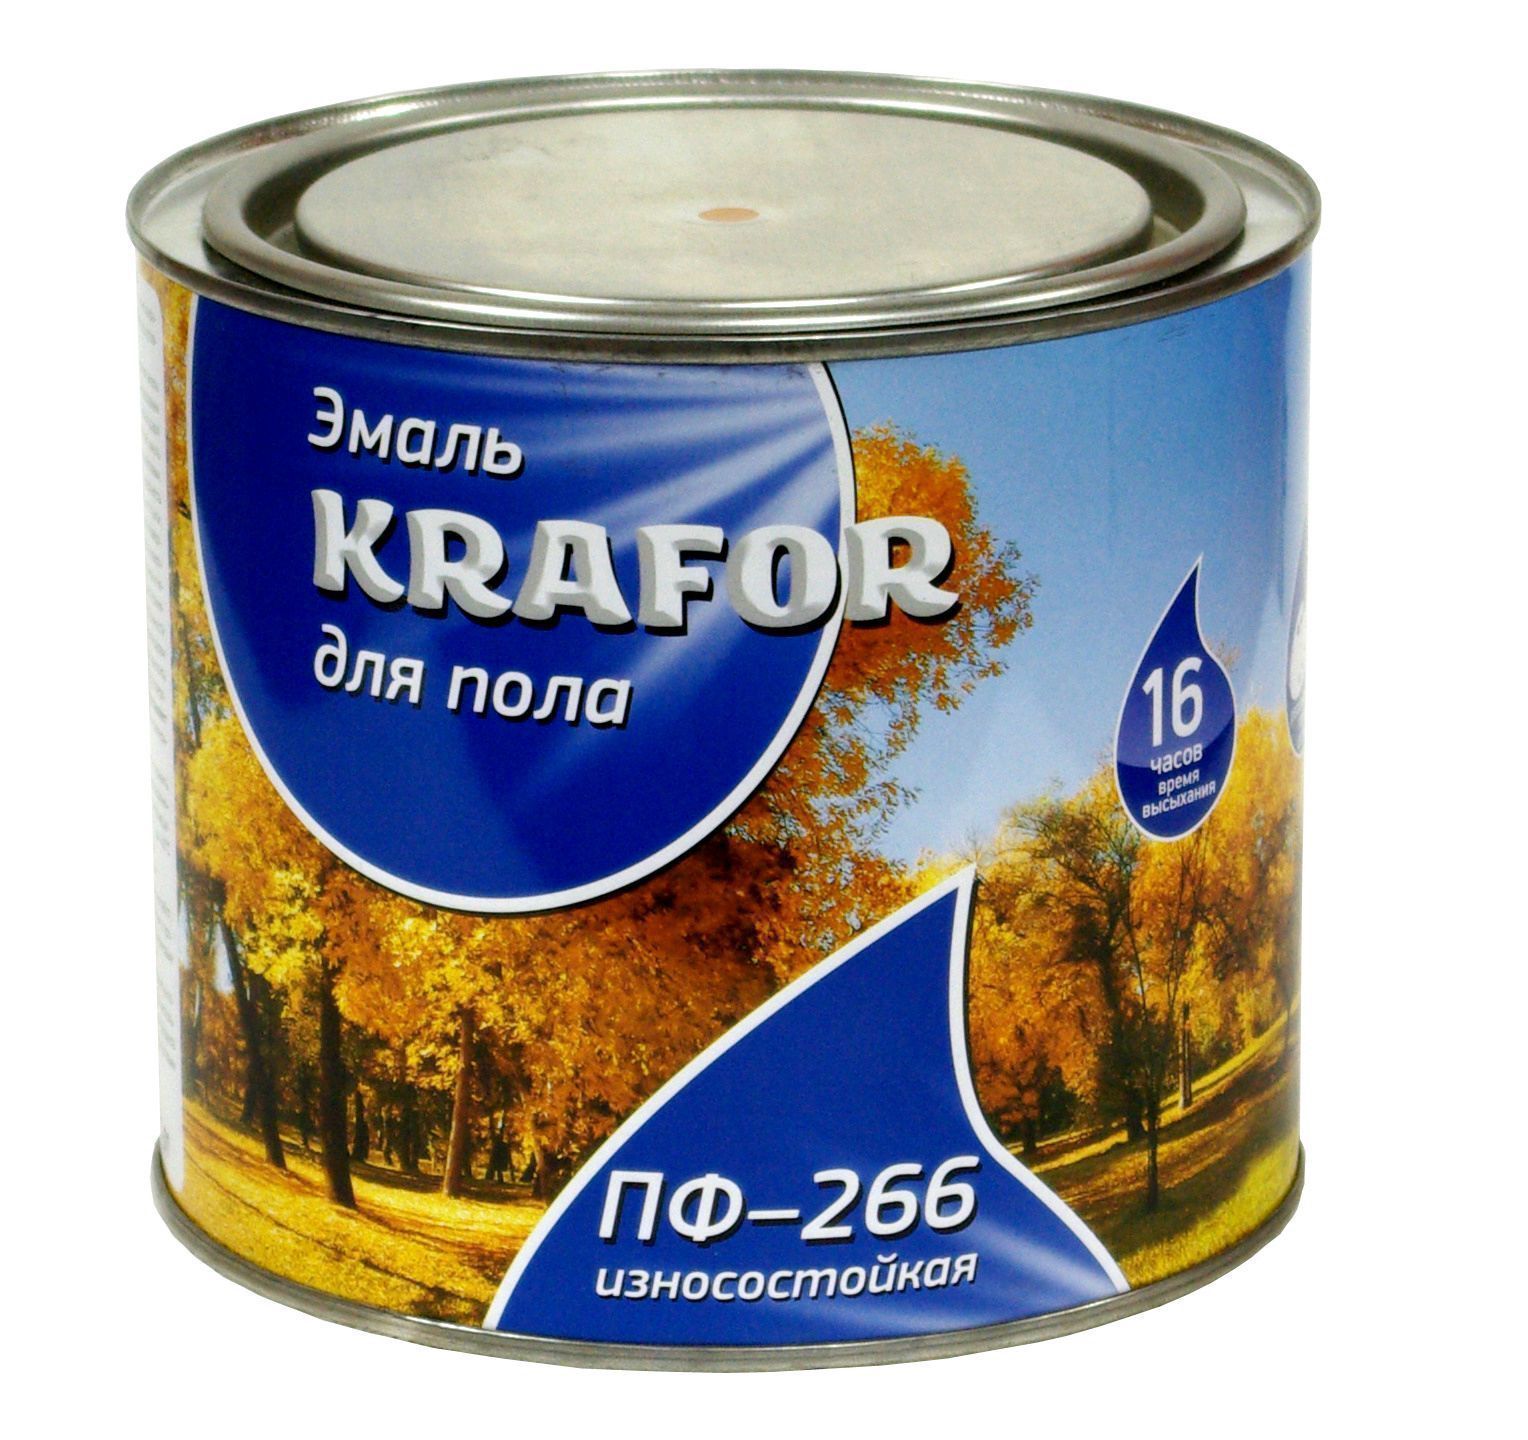 Эмаль Krafor пф-266 желто-коричНевая 2.7кг 26021 Krafor от магазина Tehnorama